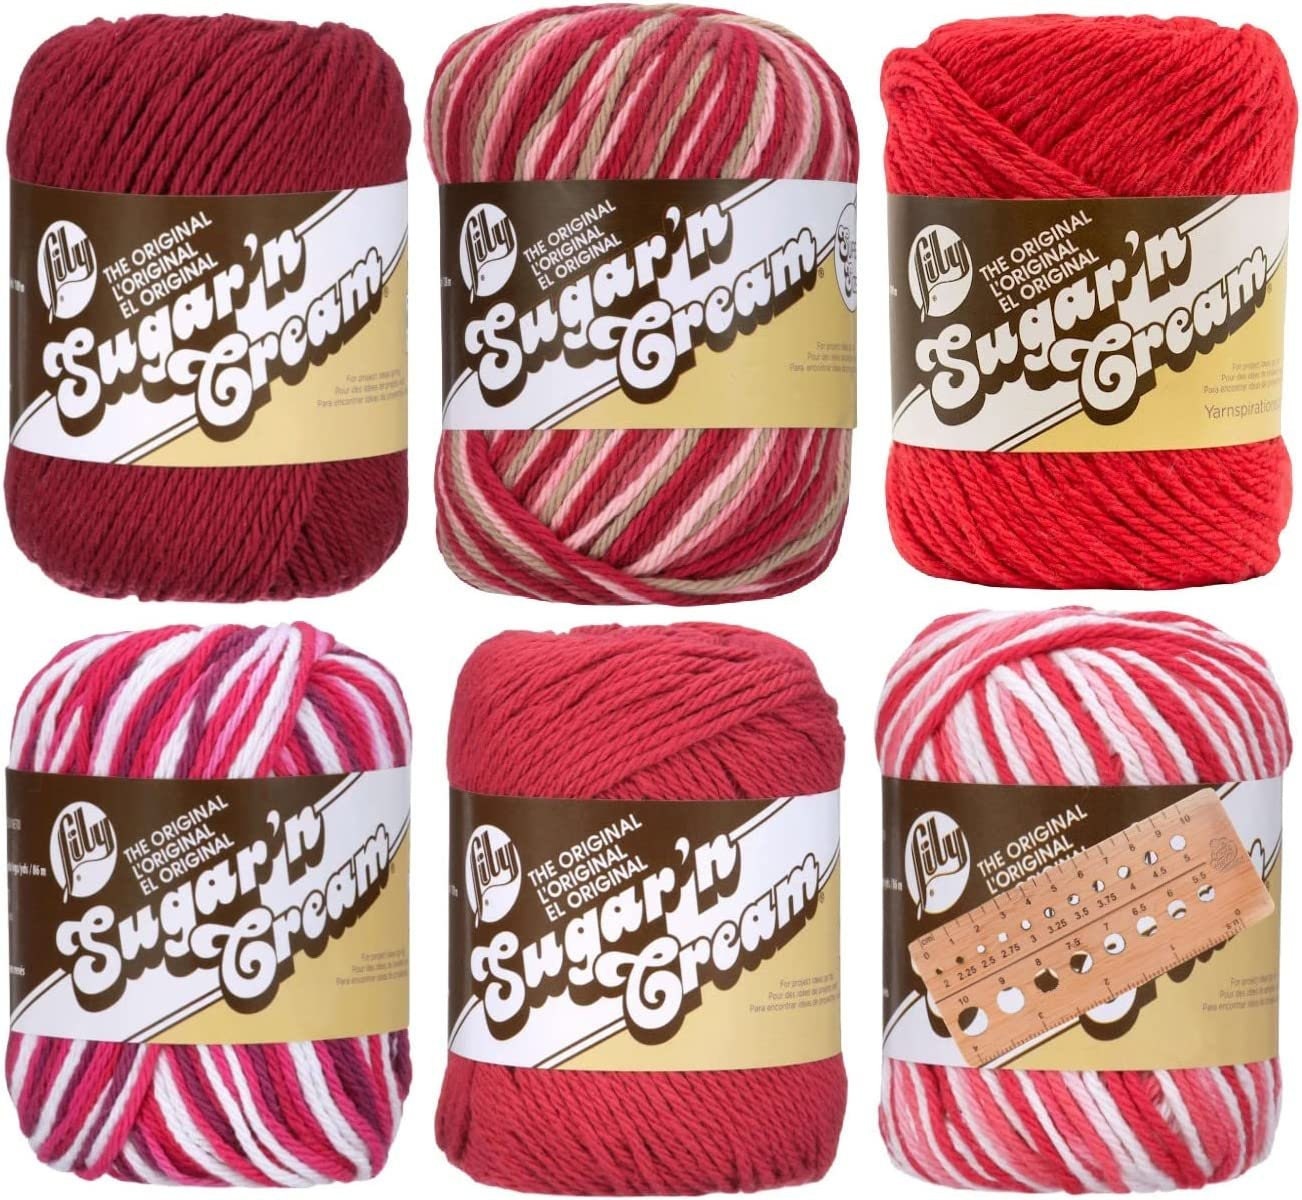  Lion Brand Yarn - 24/7 Cotton - 6 Skein Assortment